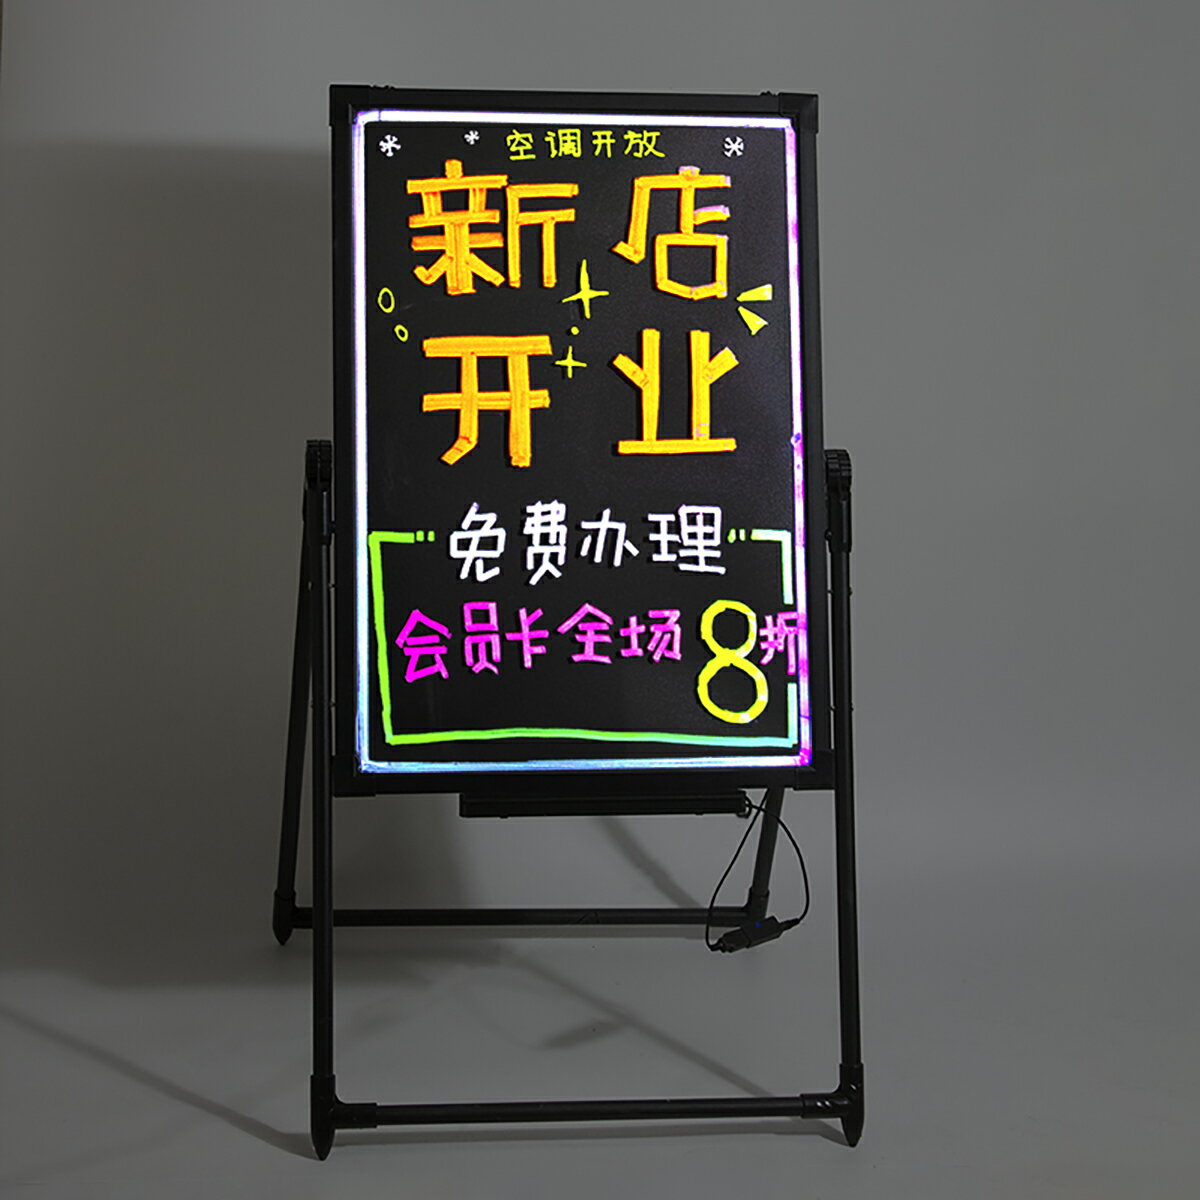 廣告展示架 廣告牌 支架 展示牌 LED電子發光板熒光板廣告牌展示牌 立式小黑板夜市擺攤用手寫閃光